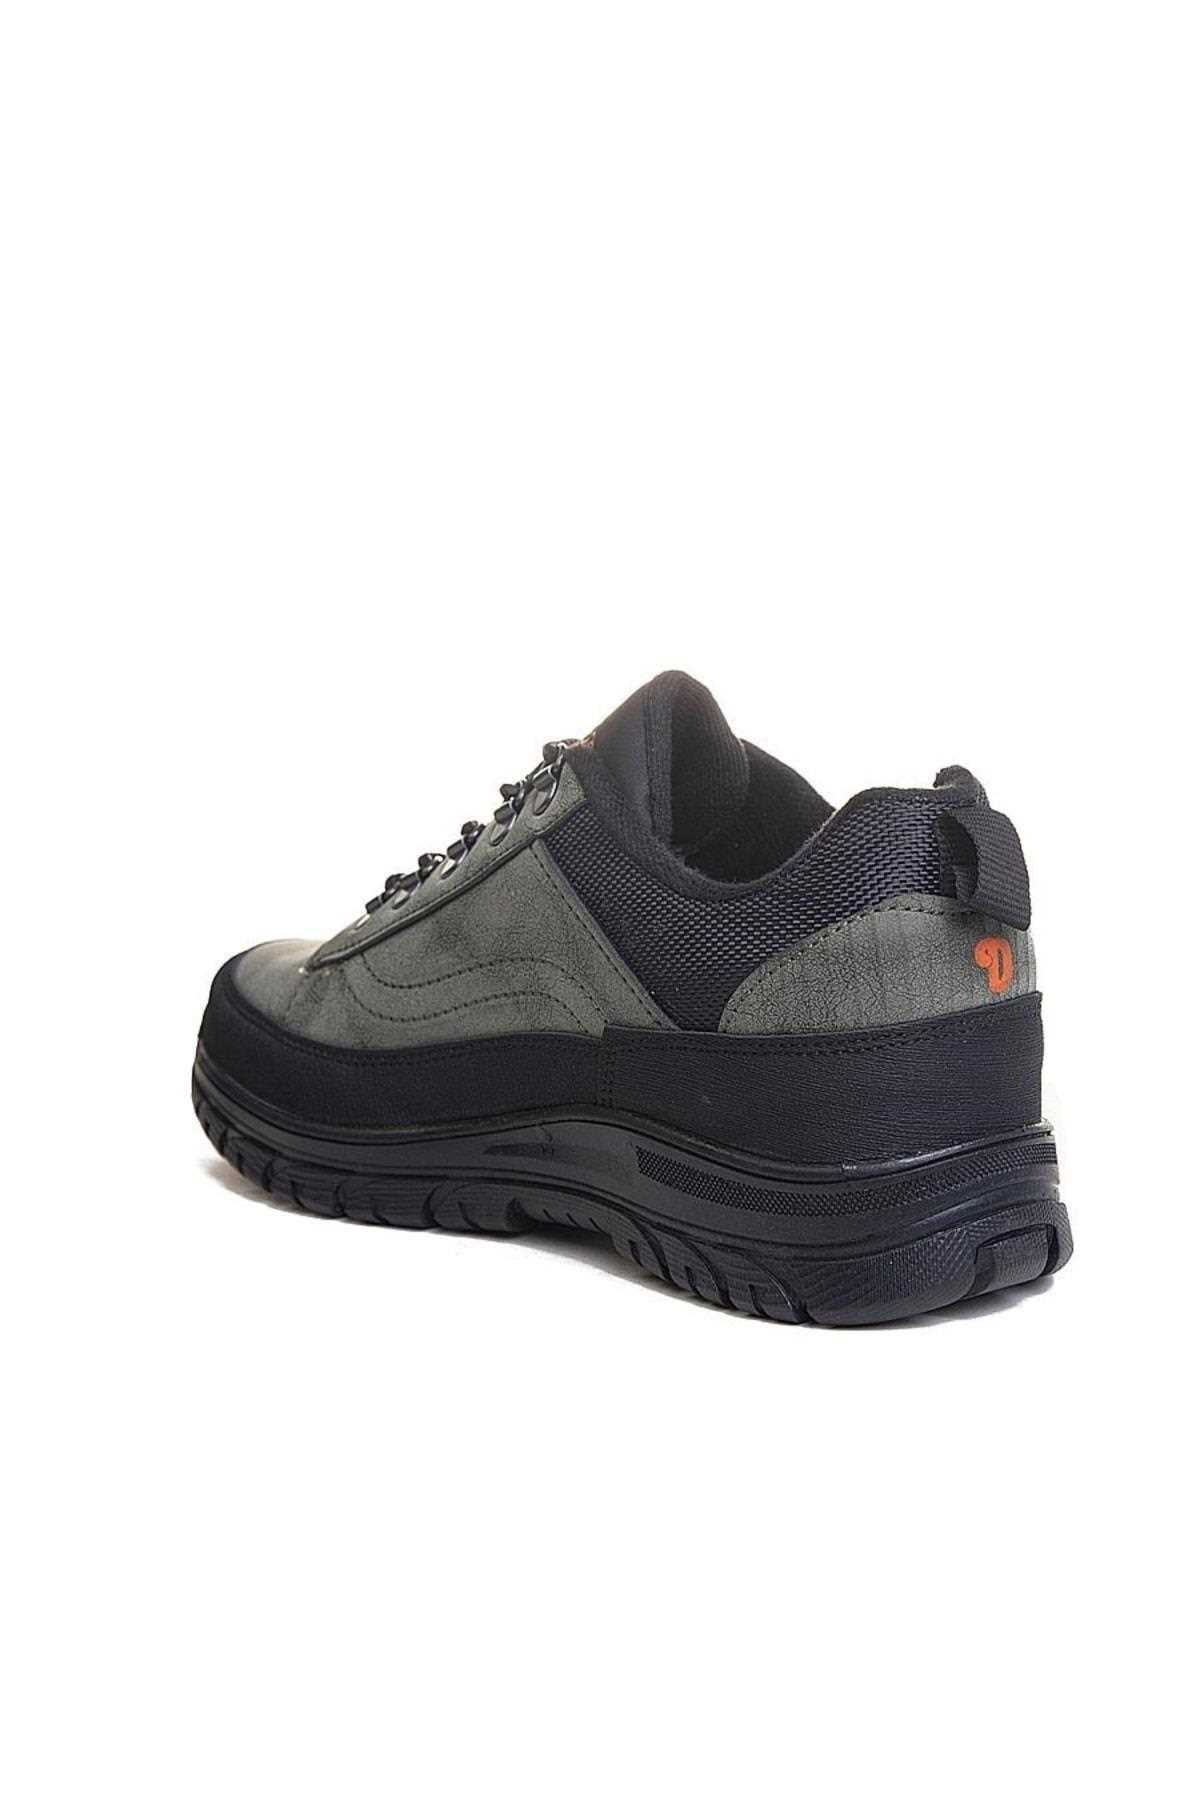 فروش کفش کوهنوردی مقاوم در برابر آب شیک AlbiShoes Hakiiiiii trekkkk ty335696720